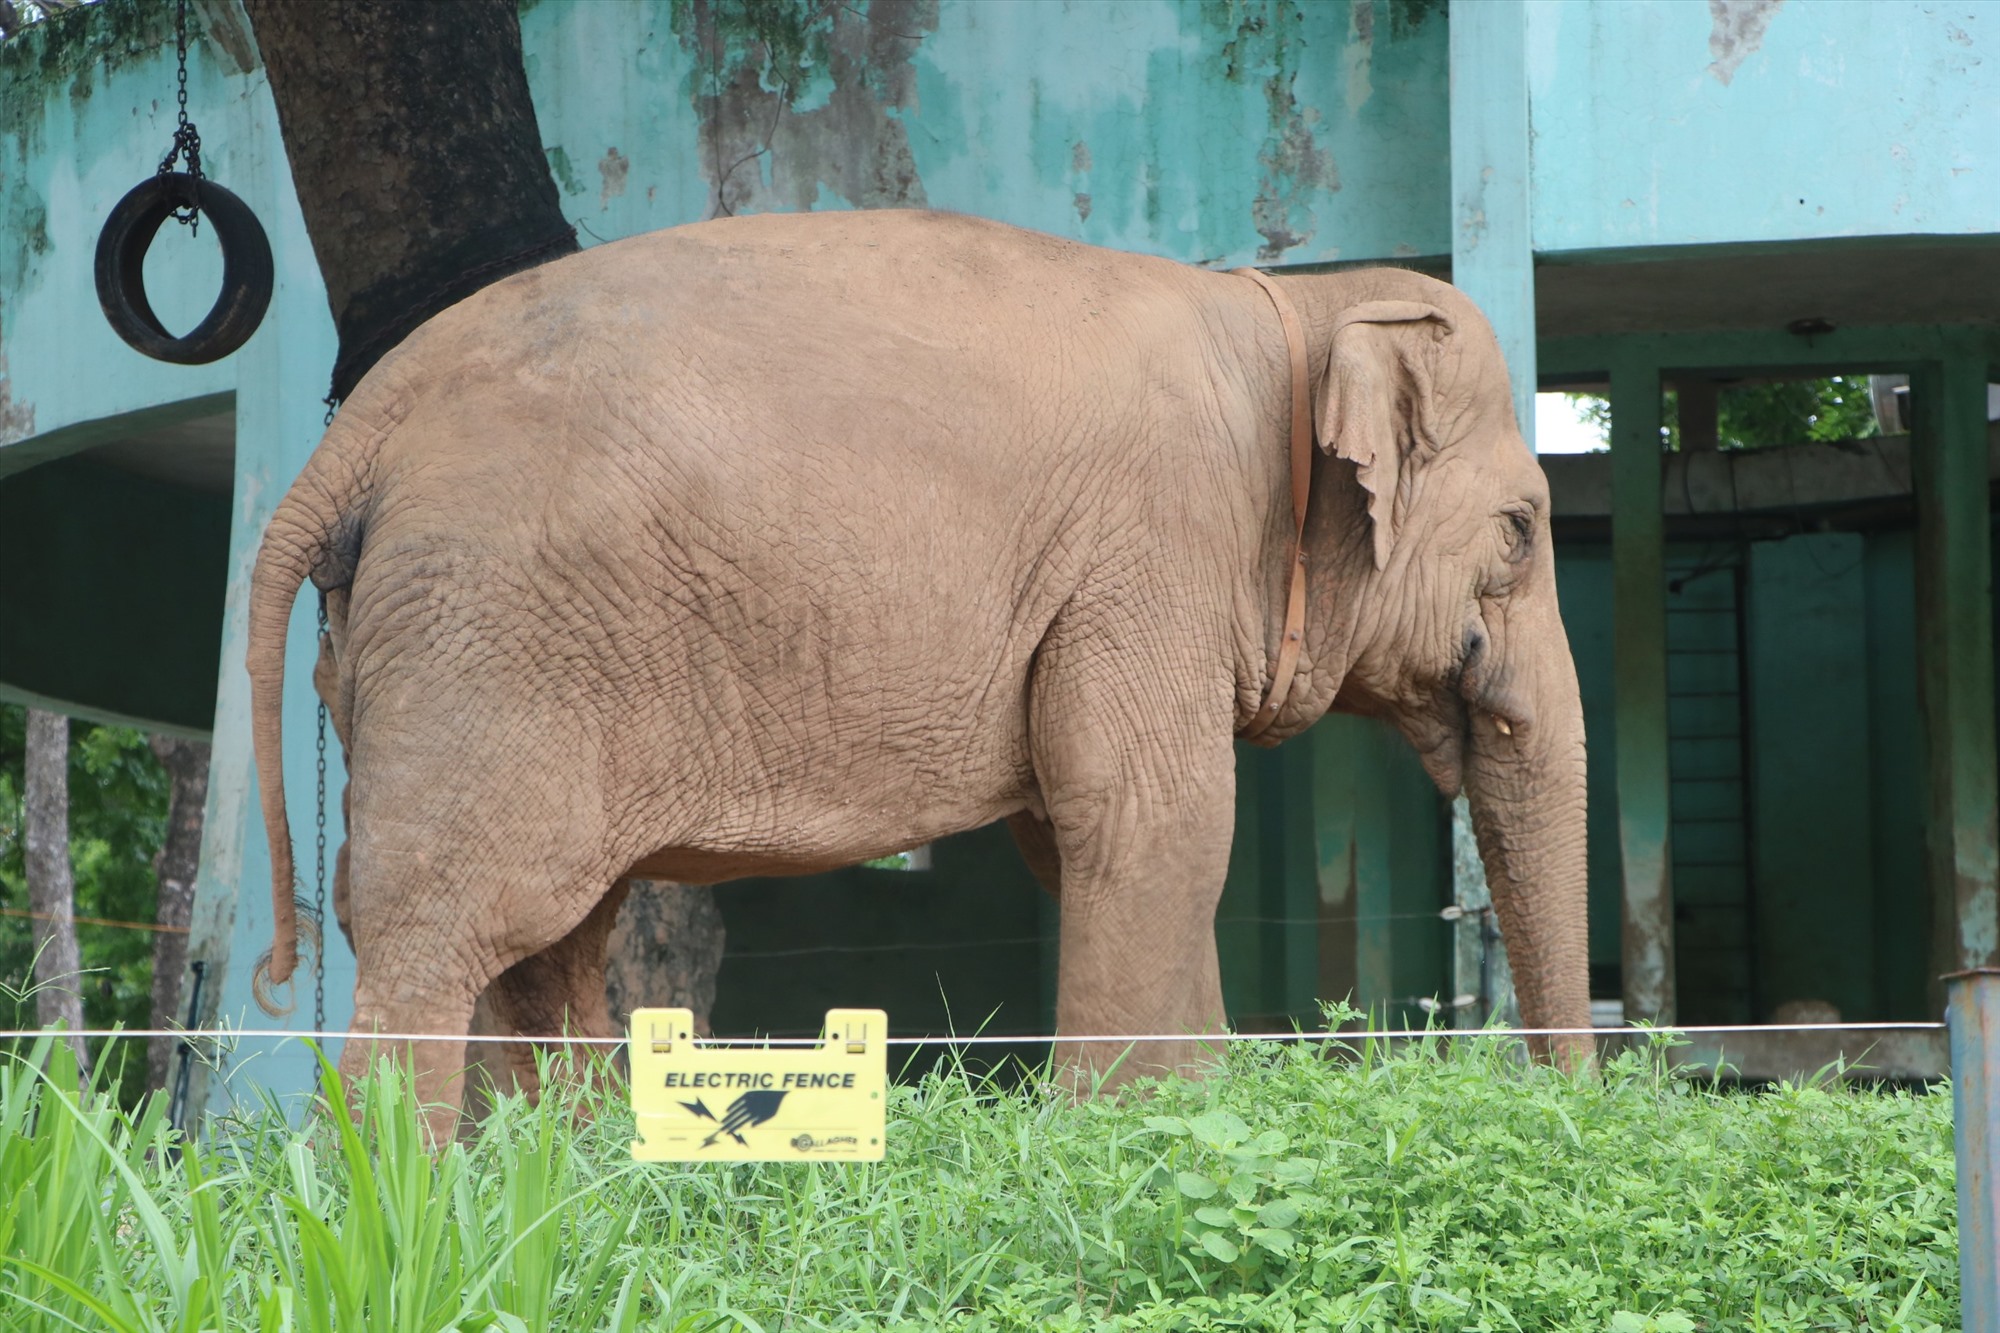 Đại diện vườn thú Hà Nội cho biết, việc xích chân hai chú voi ở đây là để tránh xung đột và cũng như đảm bảo an toàn cho nhân viên trong quá trình chăm sóc voi.